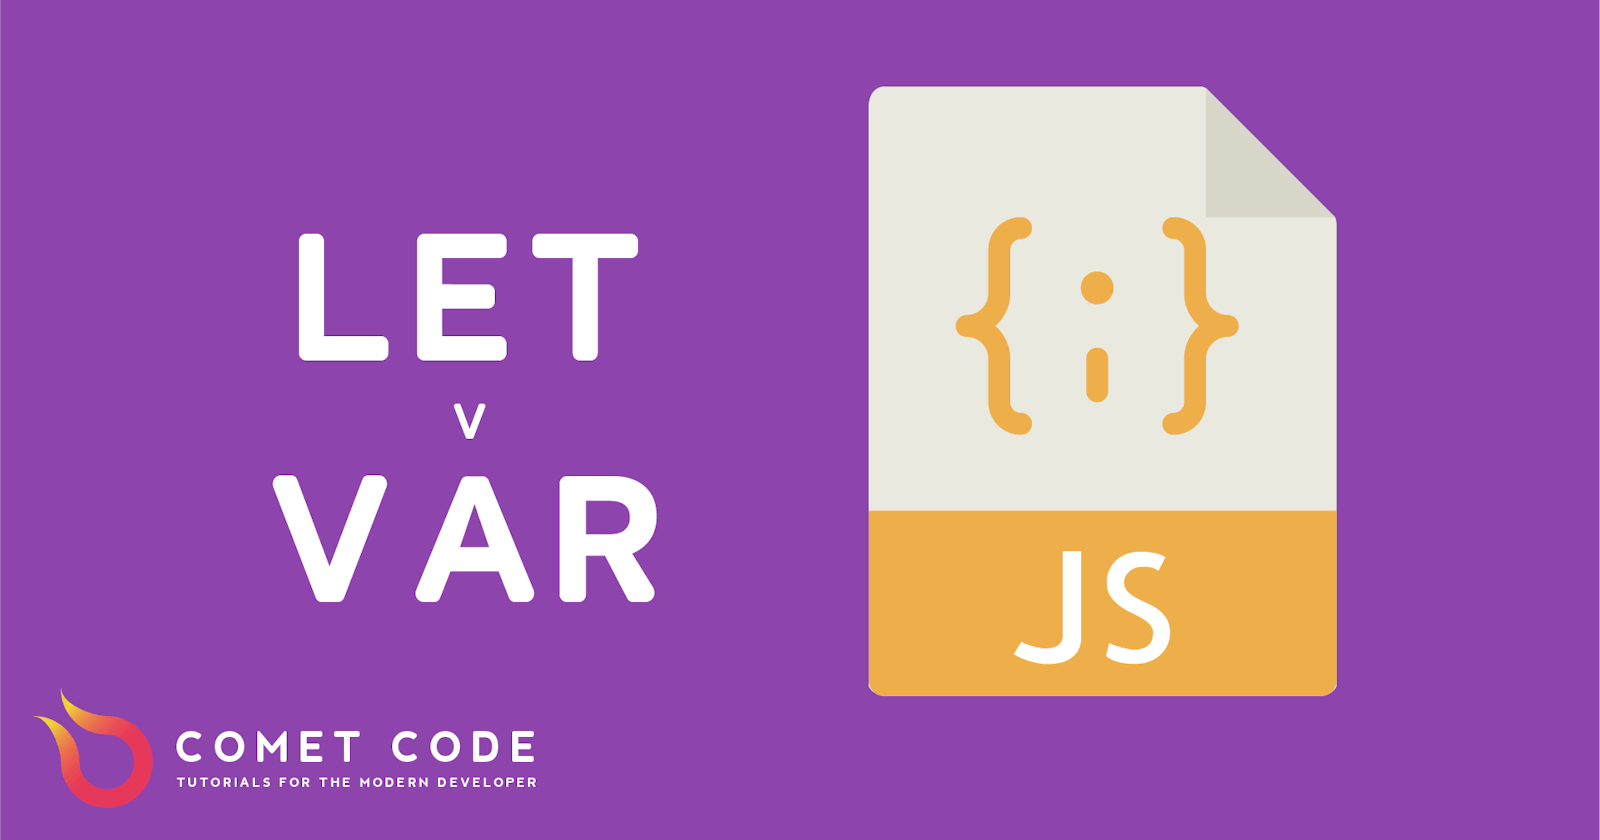 Let vs. Var in JavaScript